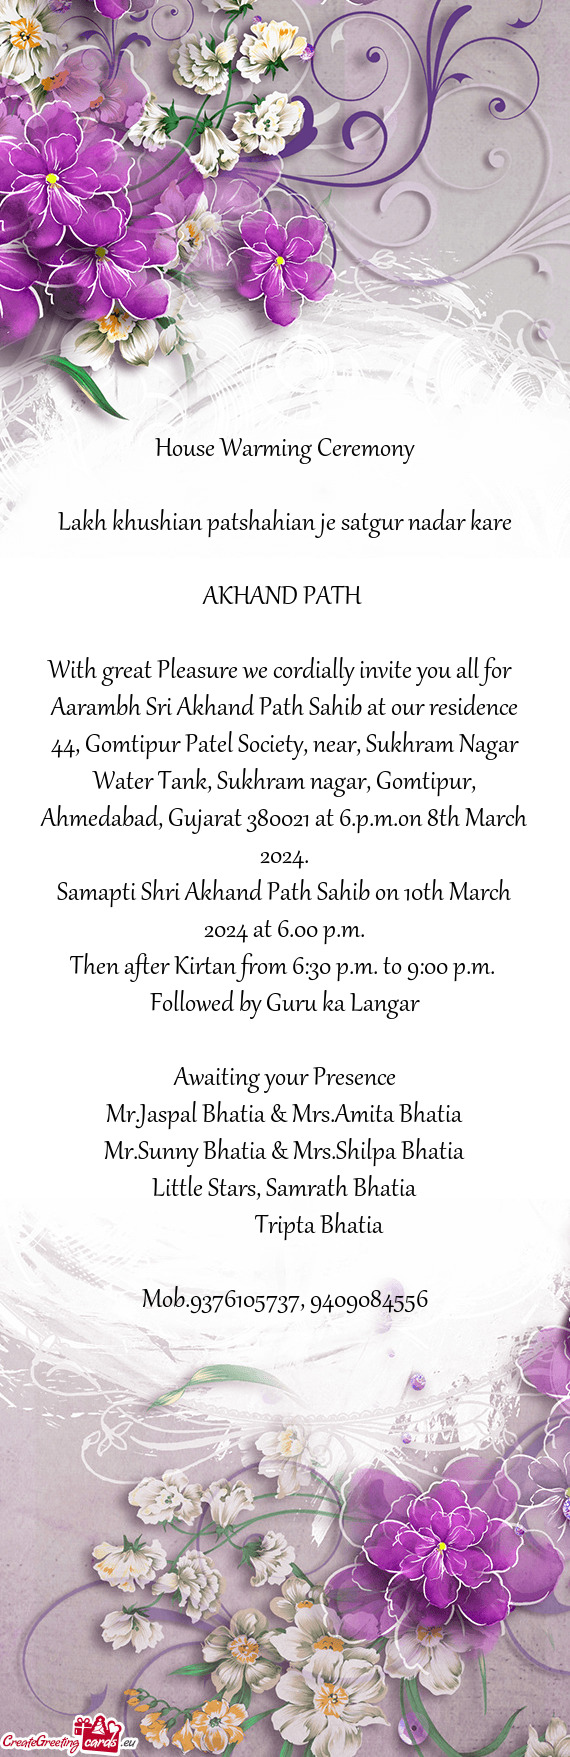 Aarambh Sri Akhand Path Sahib at our residence 44, Gomtipur Patel Society, near, Sukhram Nagar Water